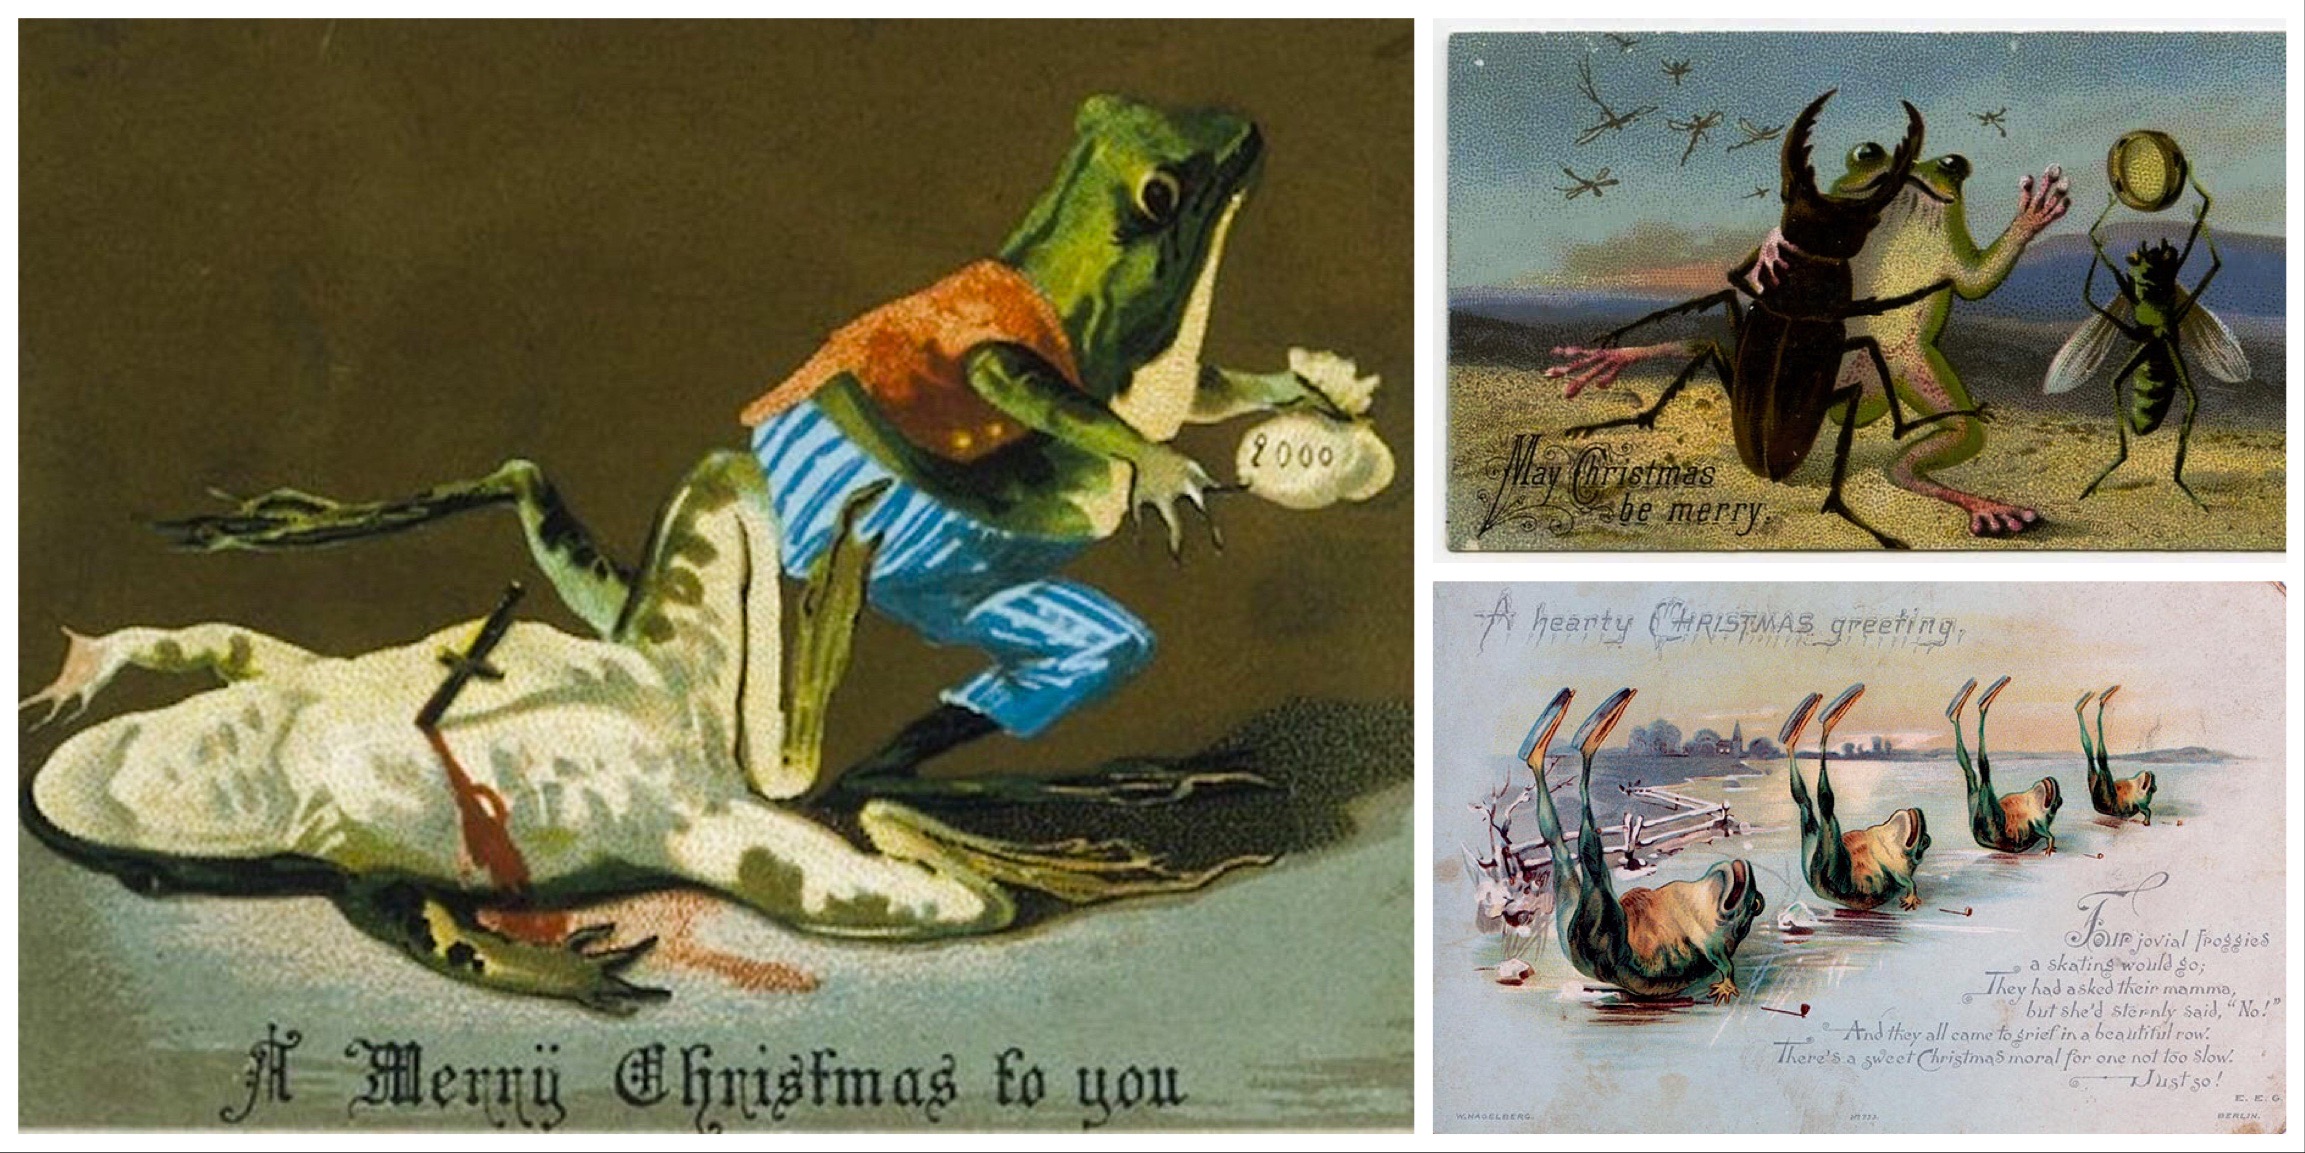 A XIX. századi Anglia előkelő köreiben biztos ismerték a kontextust, amitől egy szíven szúrt béka képe nem számított irtózatosan sértő karácsonyi üdvözletnek. De próbáljon meg ezekről a képekről valaki a karácsonyra asszociálni!